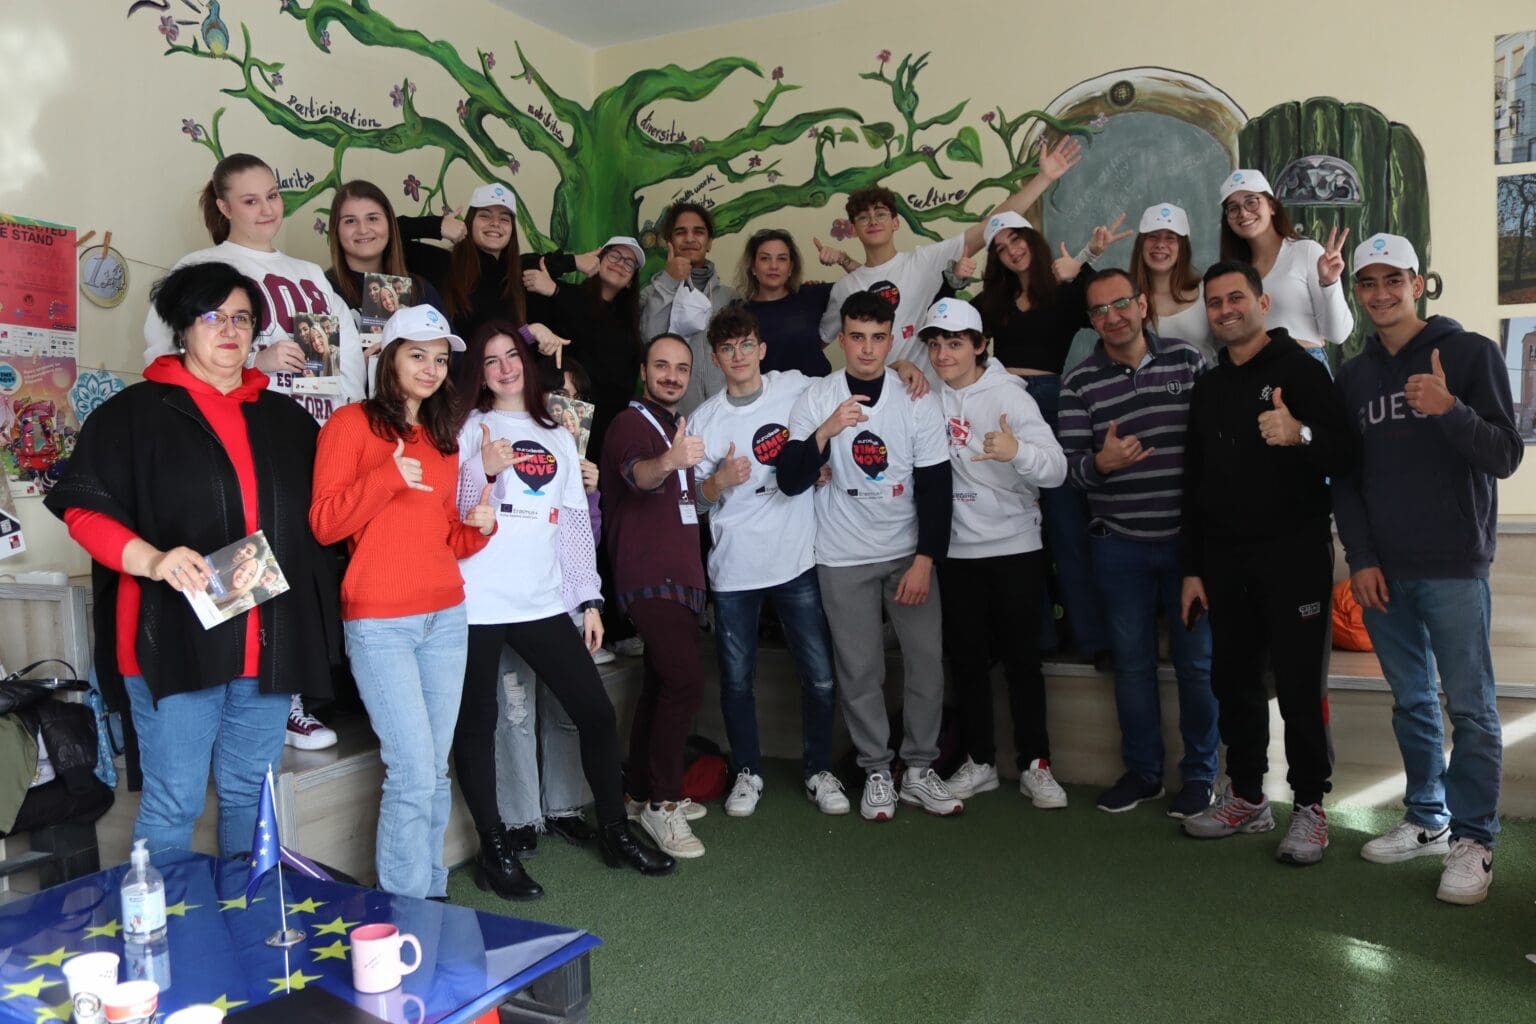 Εκπαιδευτική επίσκεψη μαθητών του 3ου ΓΕΛ Κοζάνης και μαθητών από Βουλγαρία και Τουρκία που συμμετέχουν σε πρόγραμμα Erasmus+ στο ED Δυτικής Μακεδονίας